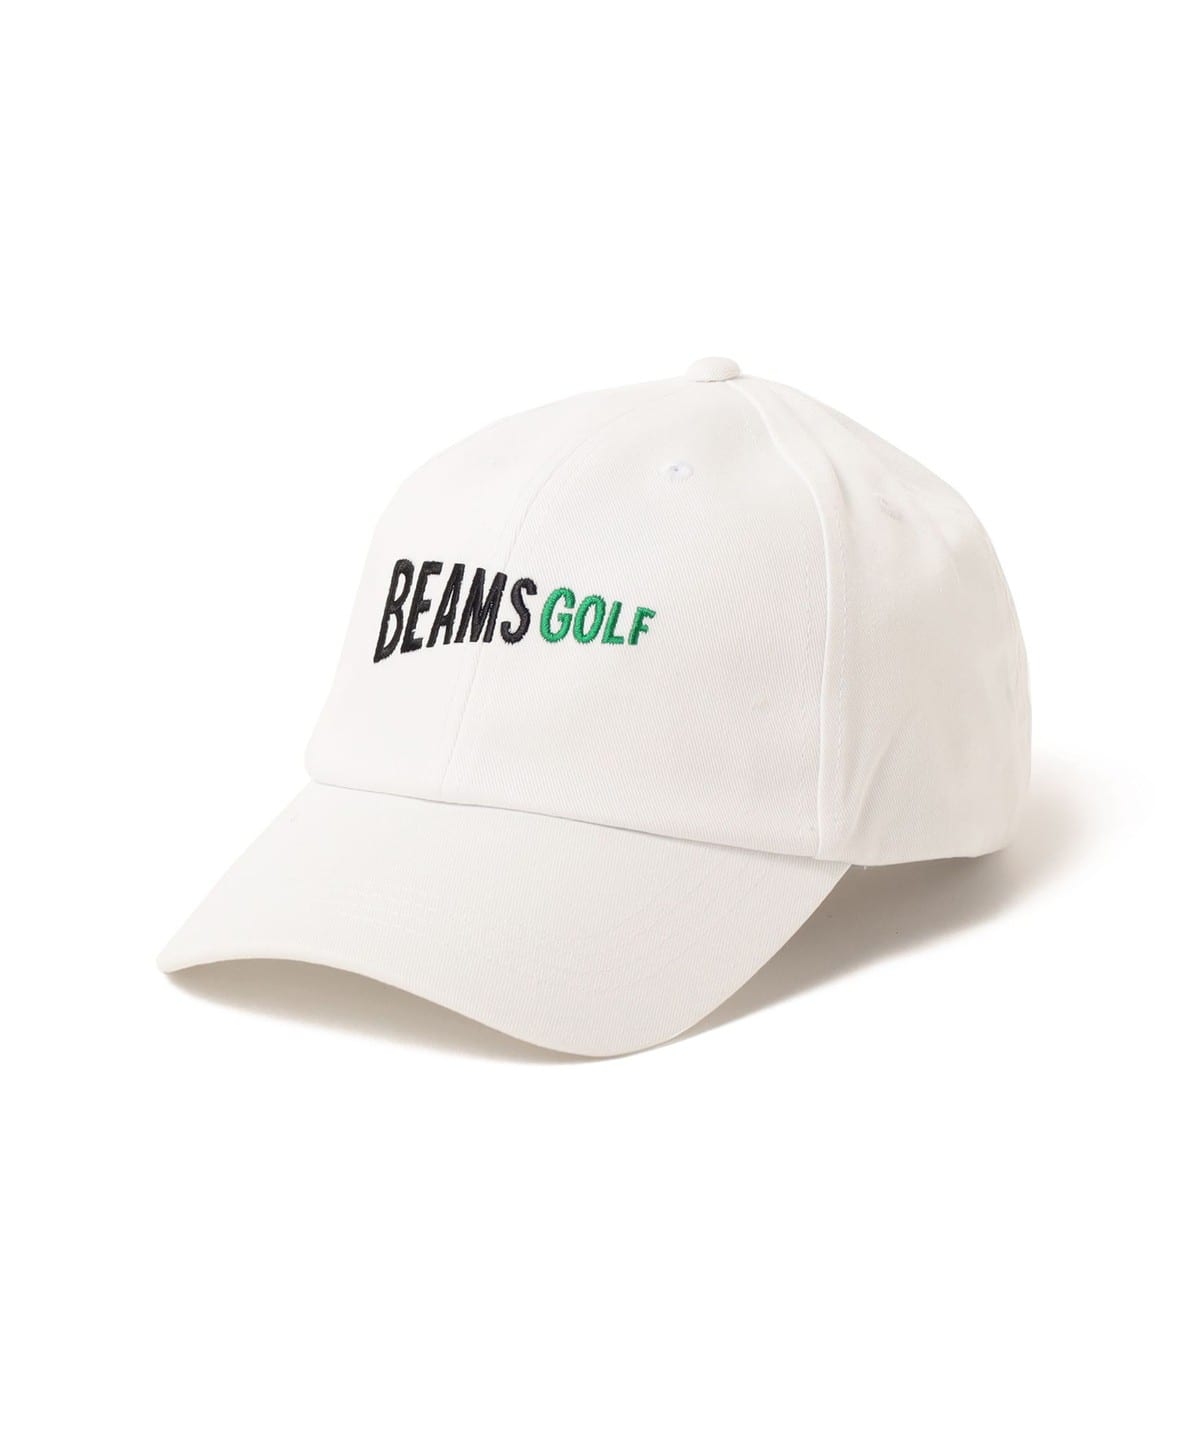 BEAMS GOLF (BEAMS GOLF) BEAMS GOLF / Flag Logo Cotton Cap (Hats 